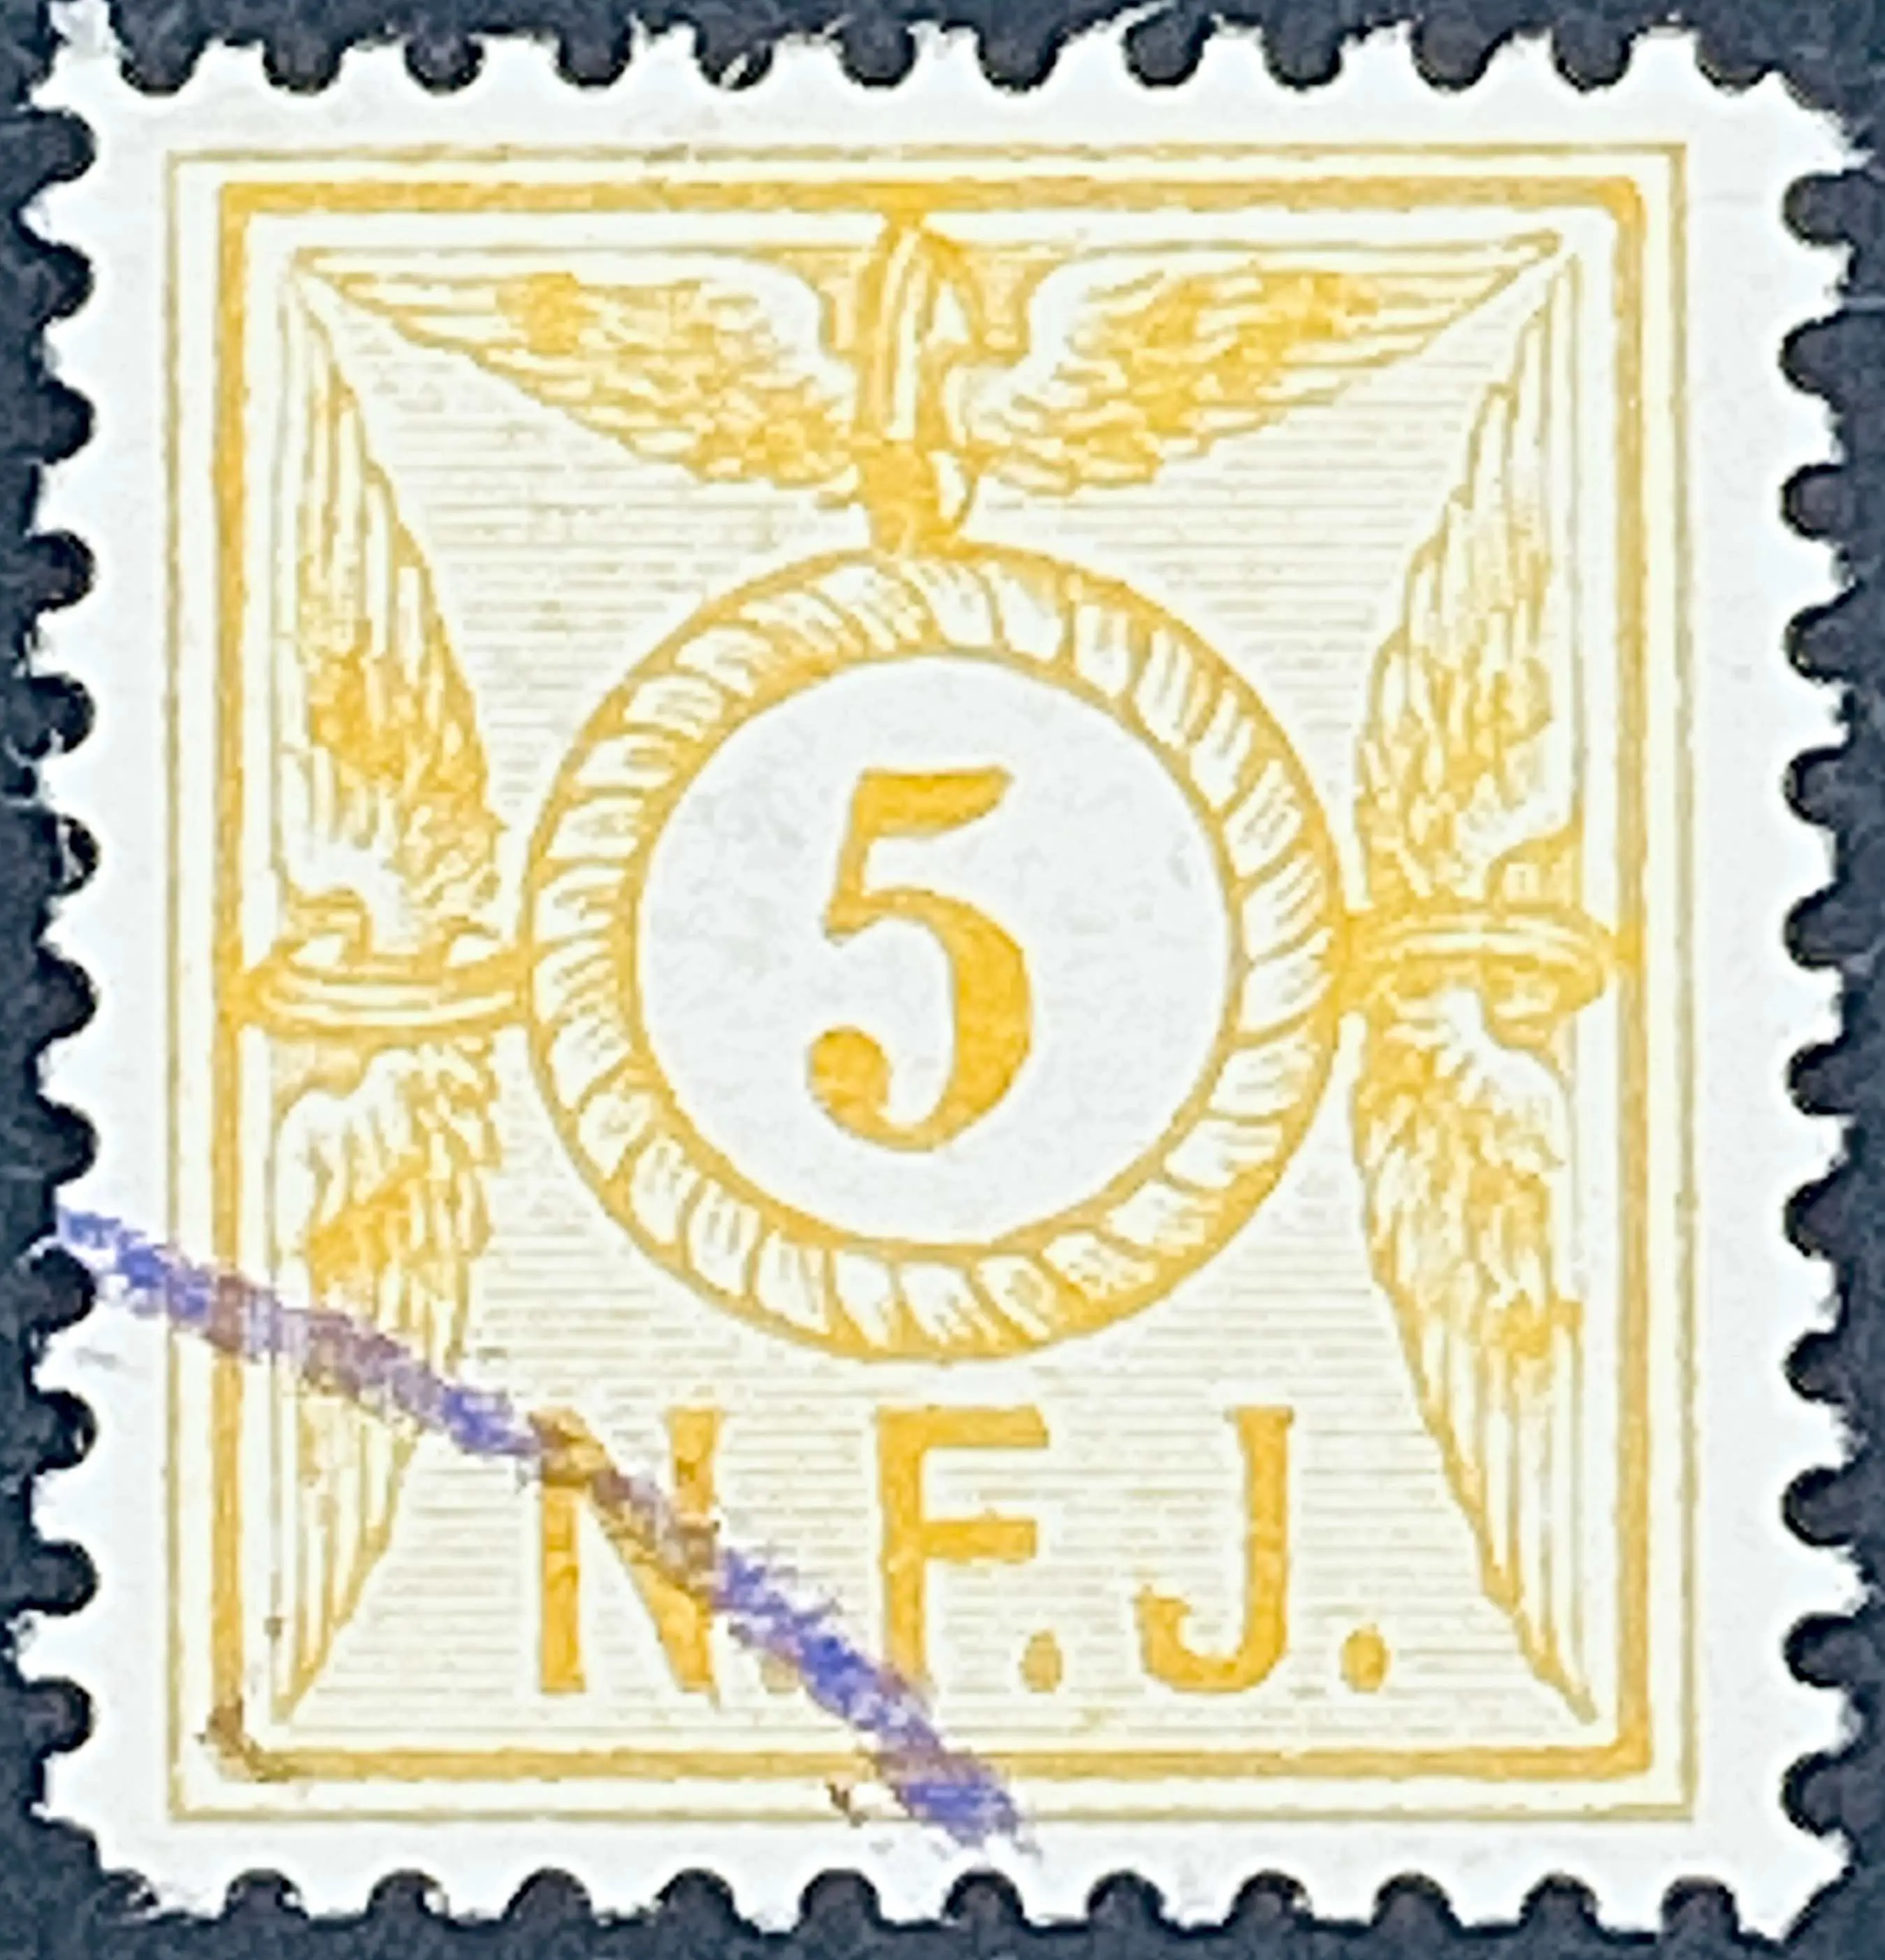 NFJ F1 - 5 Øre - Gul - banemærket er stemplet.